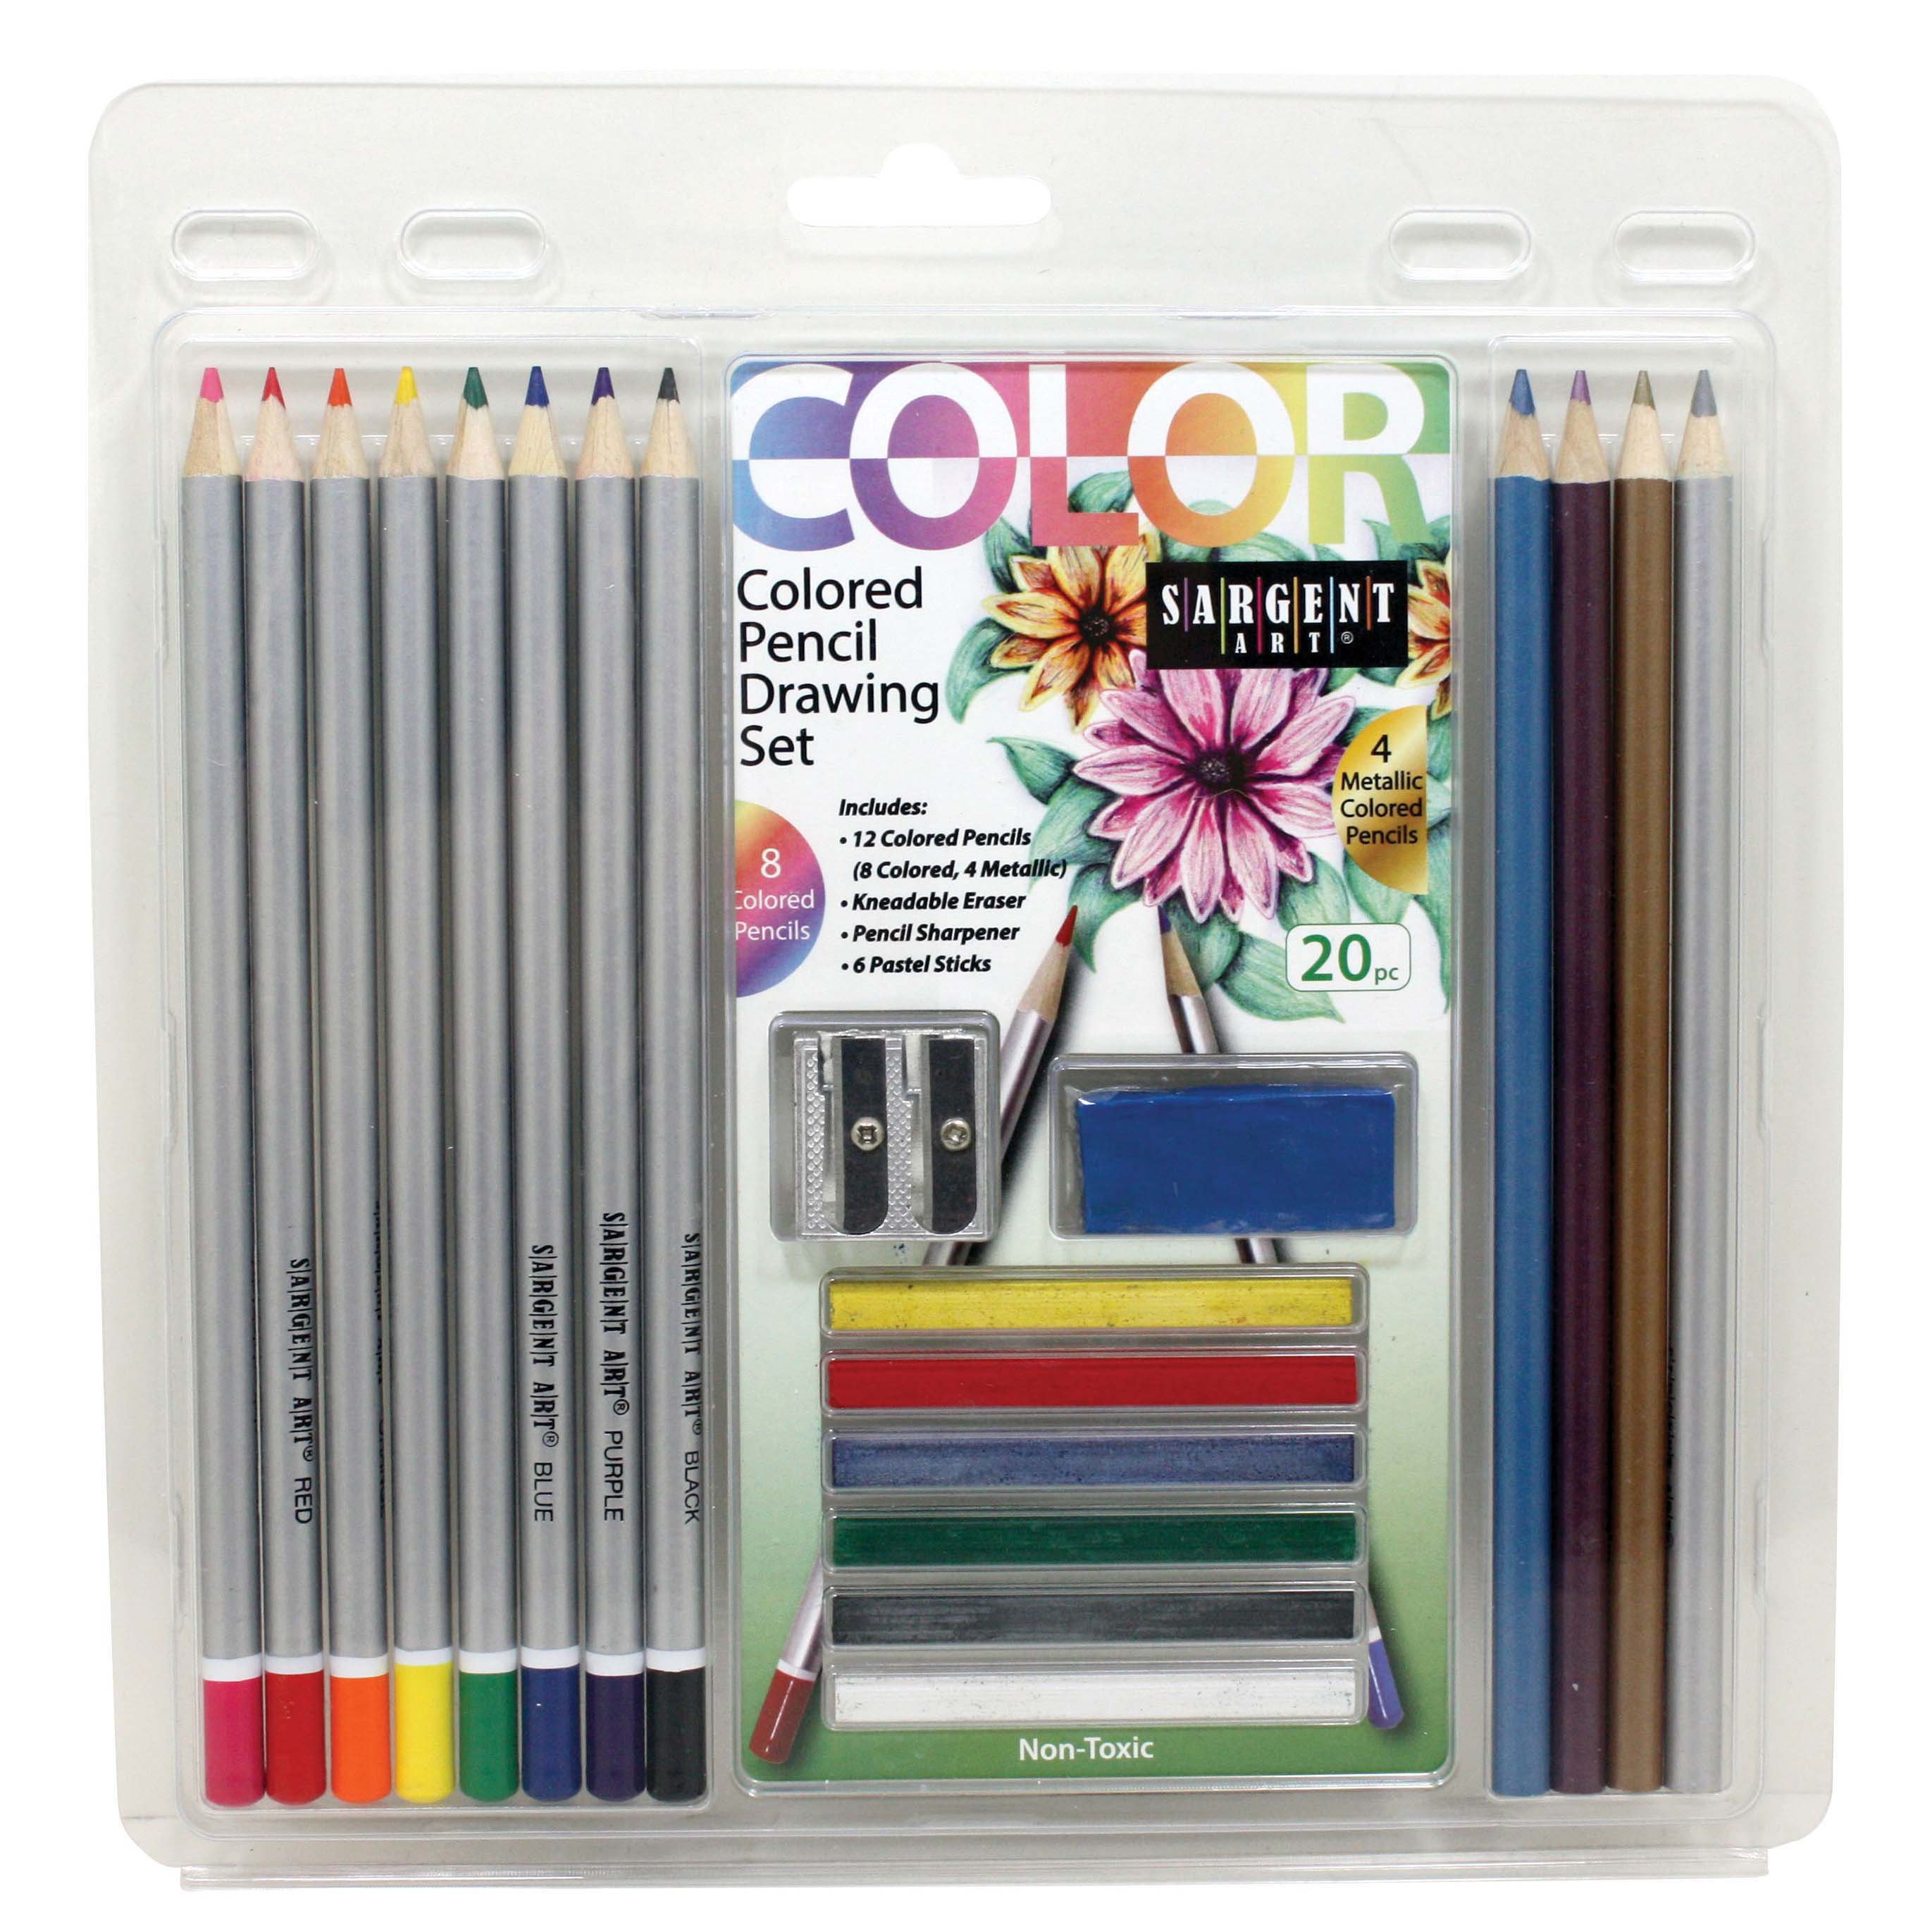 Sargent Art Colored Pencil Drawing Set - Shop Colored Pencils at H-E-B